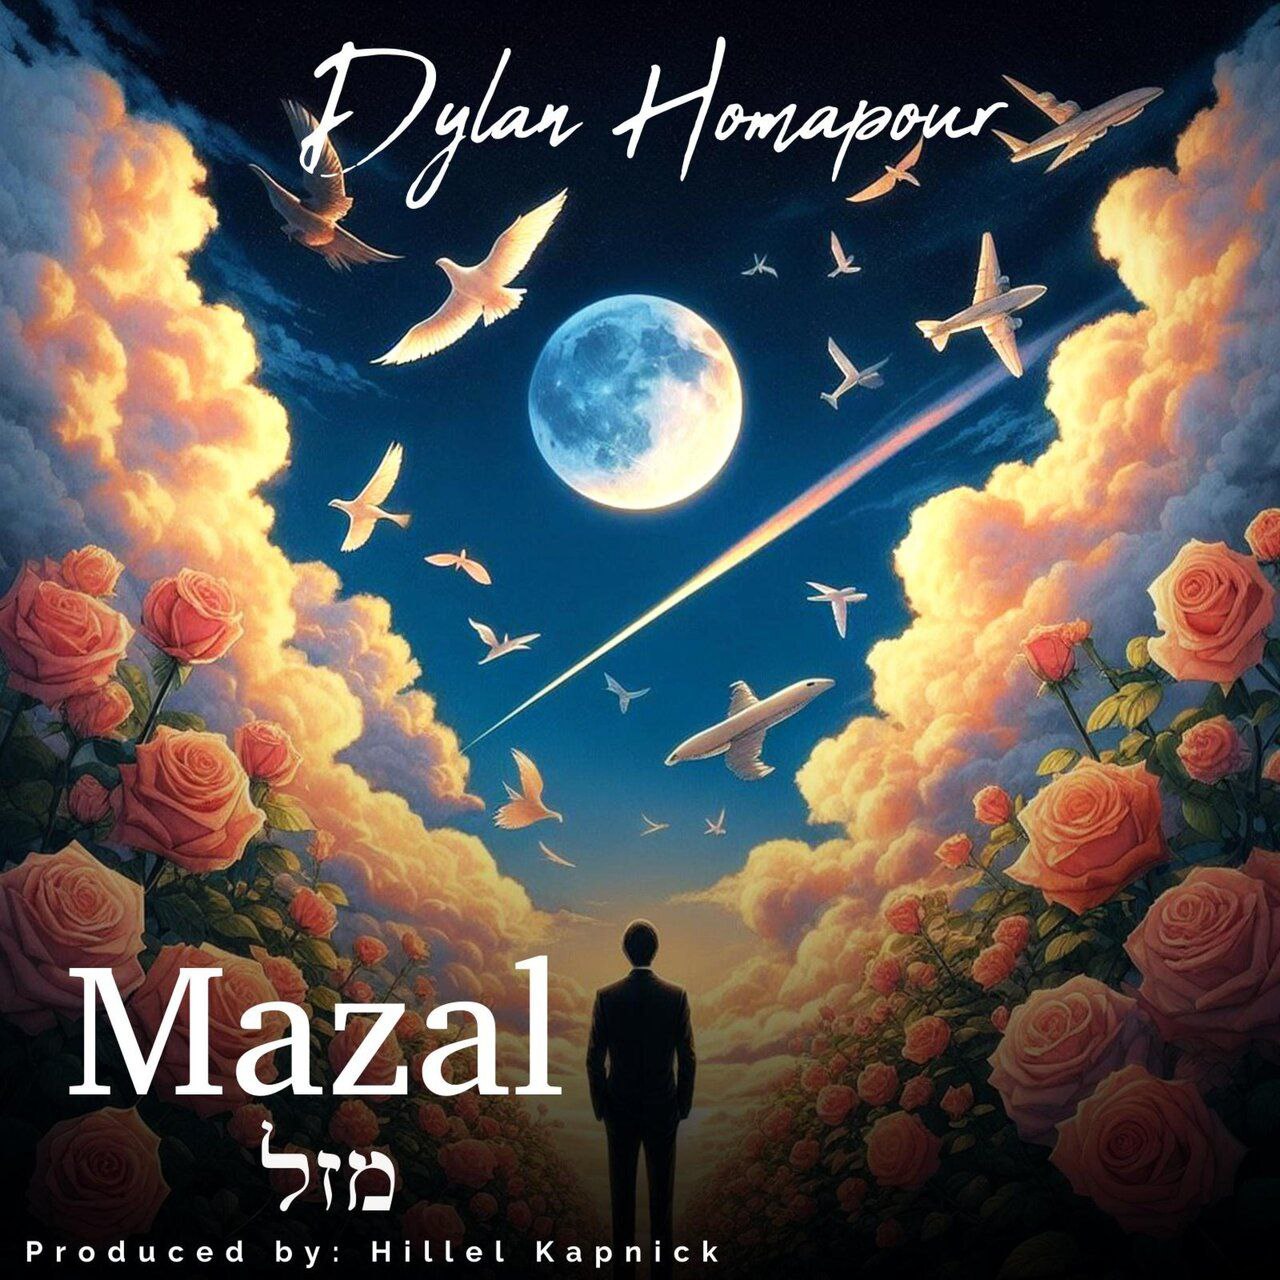 Dylan Homapour - Mazal (Single)